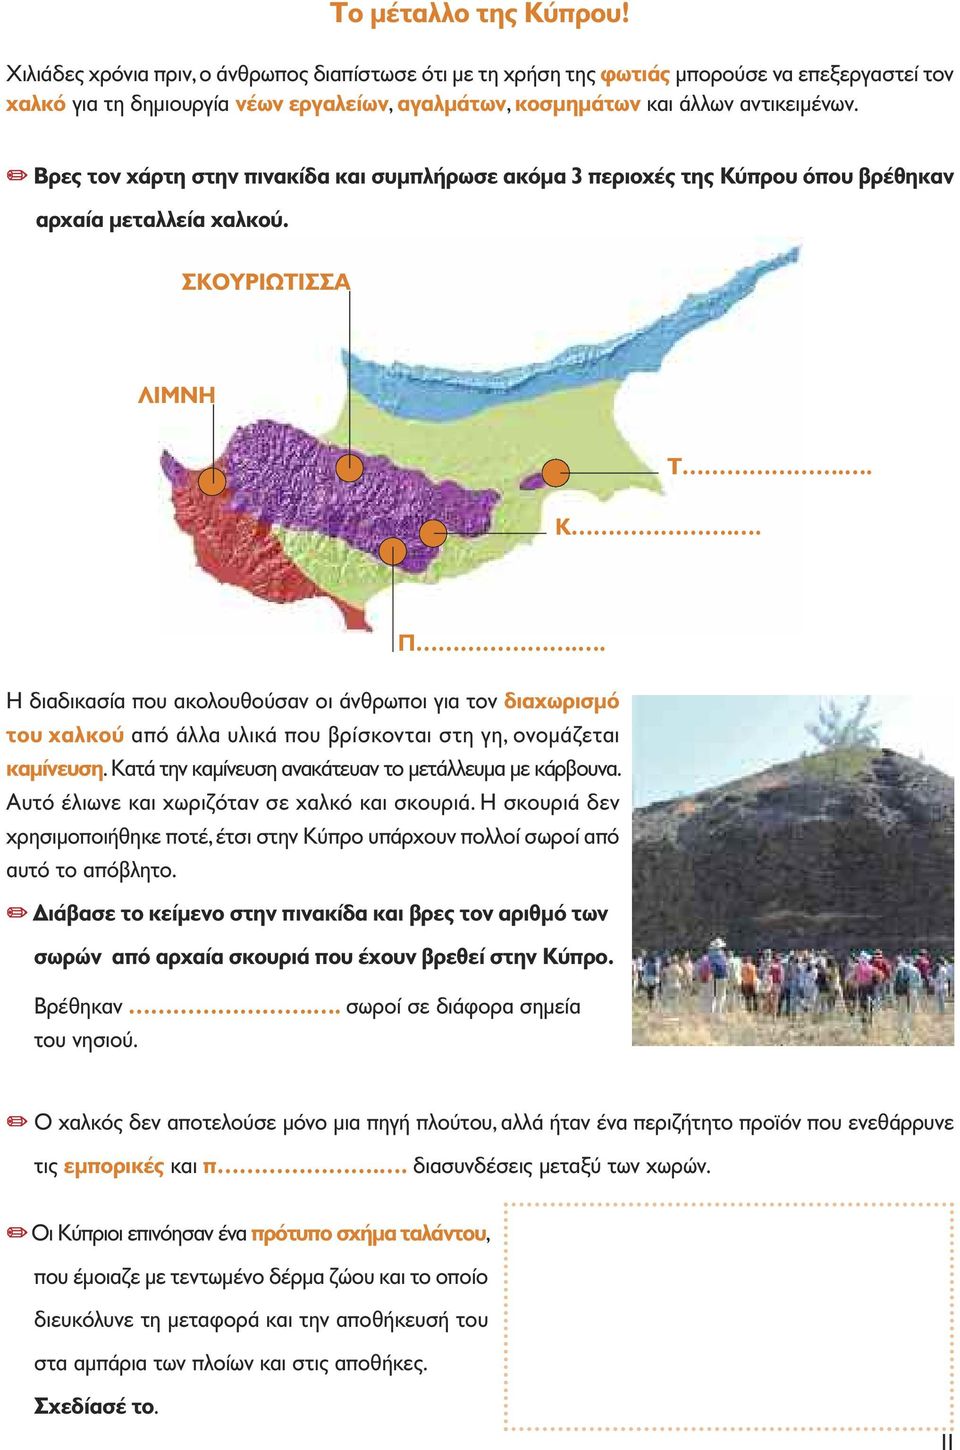 " Βρες τον χάρτη στην πινακίδα και συµπλήρωσε ακόµα 3 περιοχές της Κύπρου όπου βρέθηκαν αρχαία µεταλλεία χαλκού. ΣΚΟΥΡΙΩΤΙΣΣΑ ΛΙΜΝΗ Κ.. Τ.. Π.